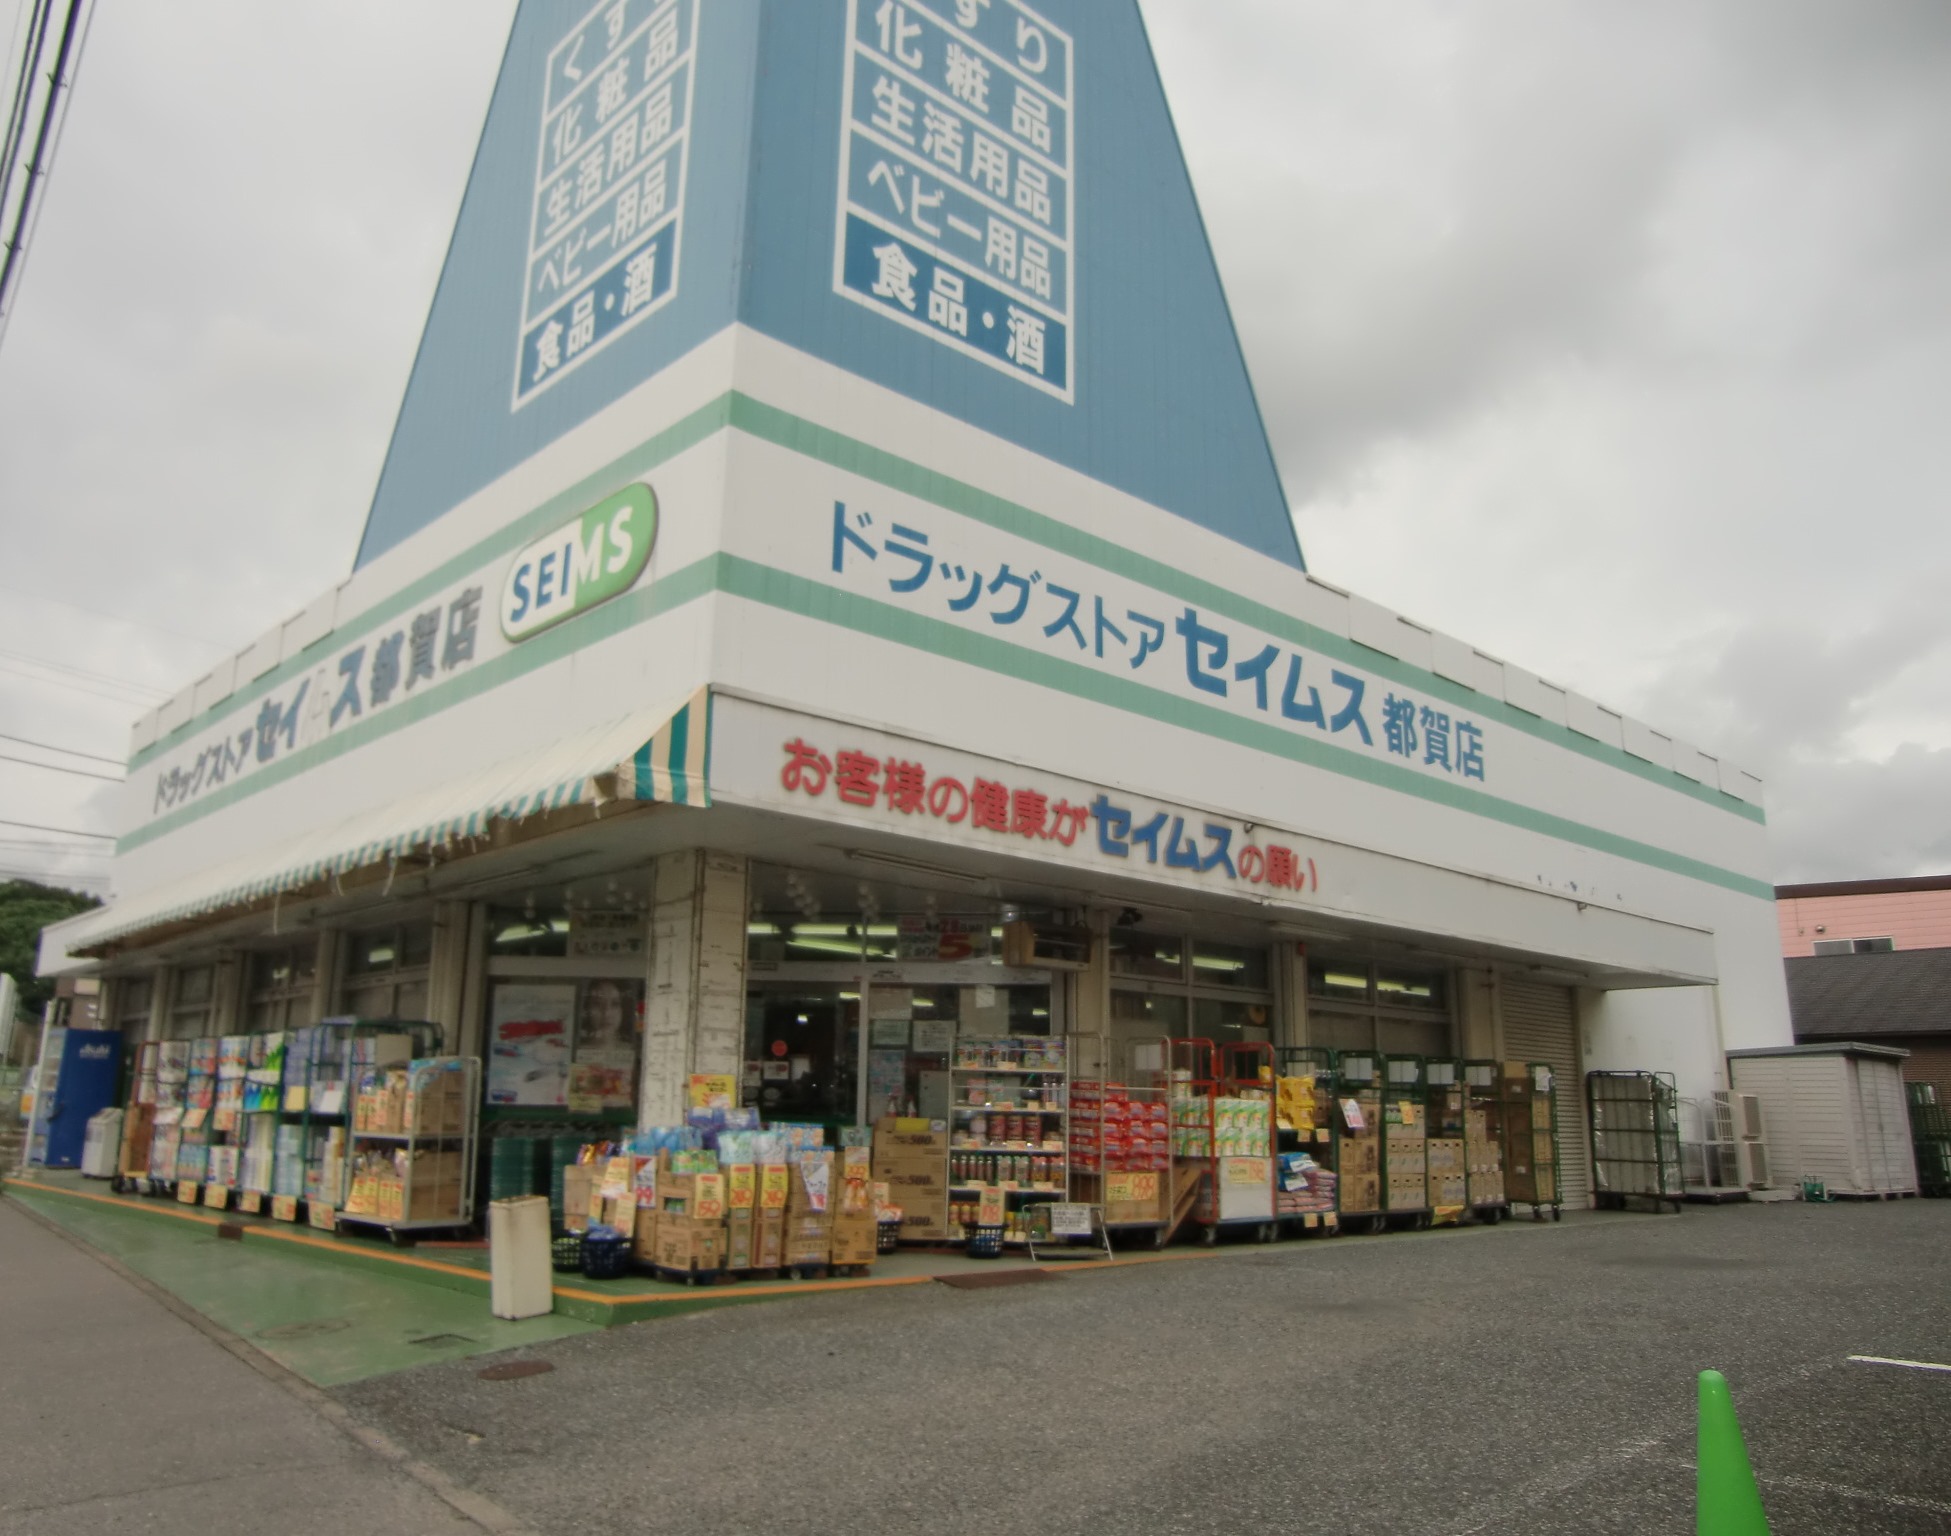 Dorakkusutoa. Drag Seimusu Tsuga shop 578m until (drugstore)